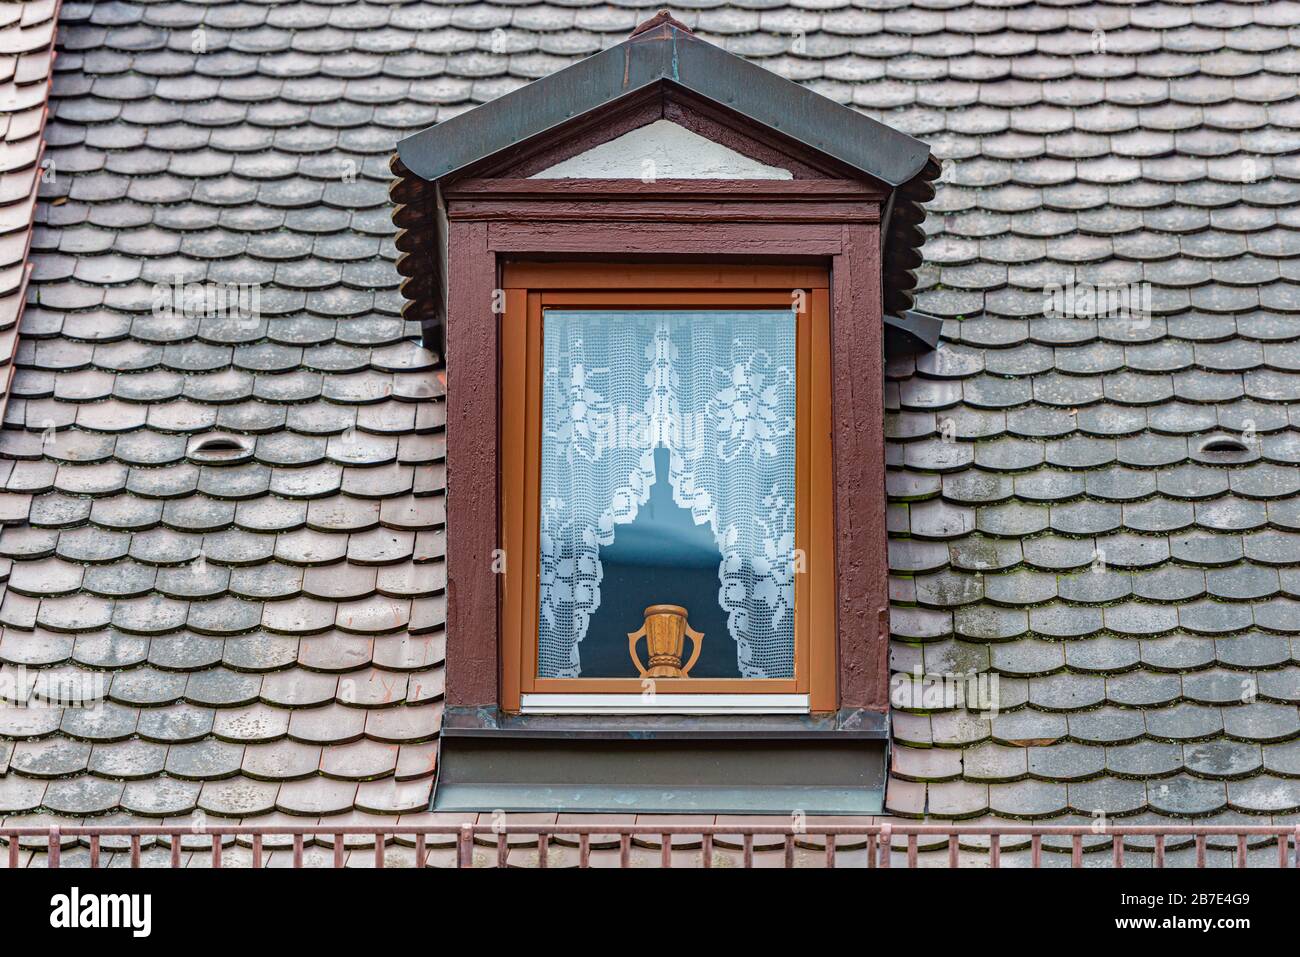 Ventana de madera vieja y oscura con jarrón hermoso. Techo de baldosas. Arquitectura y viajes en Alemania. Foto de stock